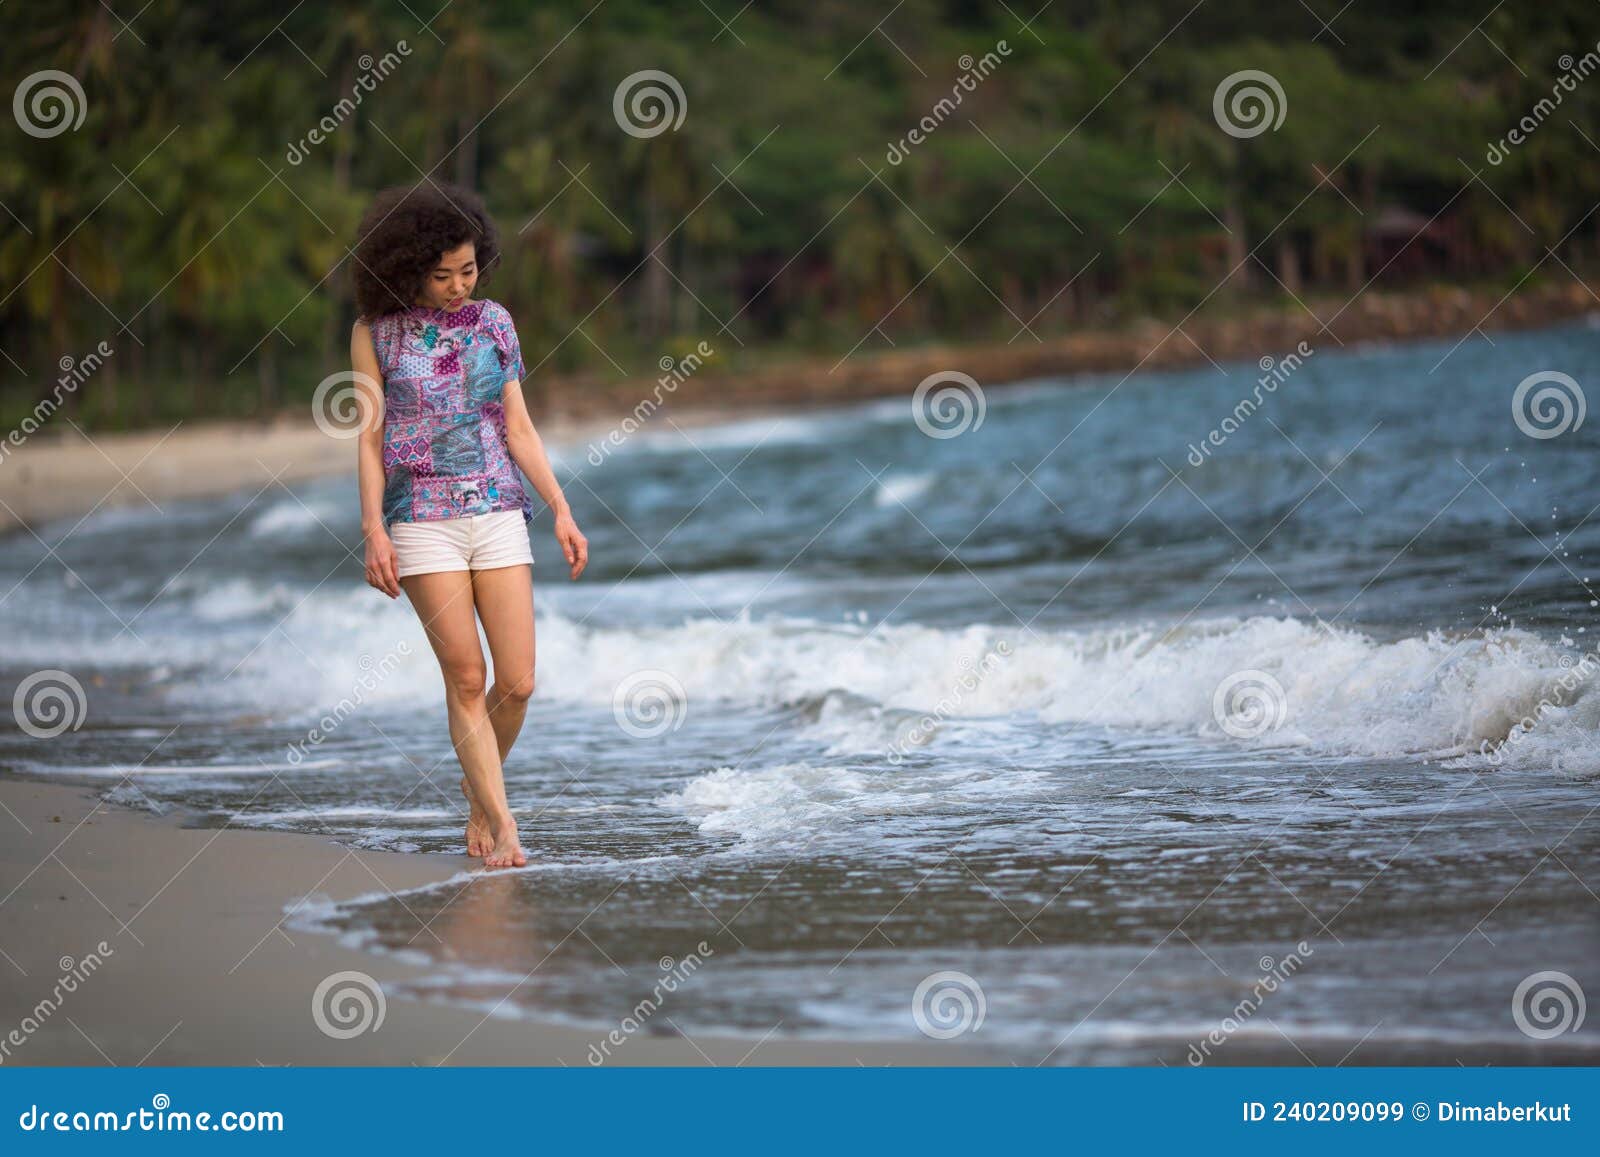 Una Mujer Mixta En La Línea De Surf Camina Por Una Playa De Mar En El  Trópico. Imagen de archivo - Imagen de vacaciones, actividad: 240209099